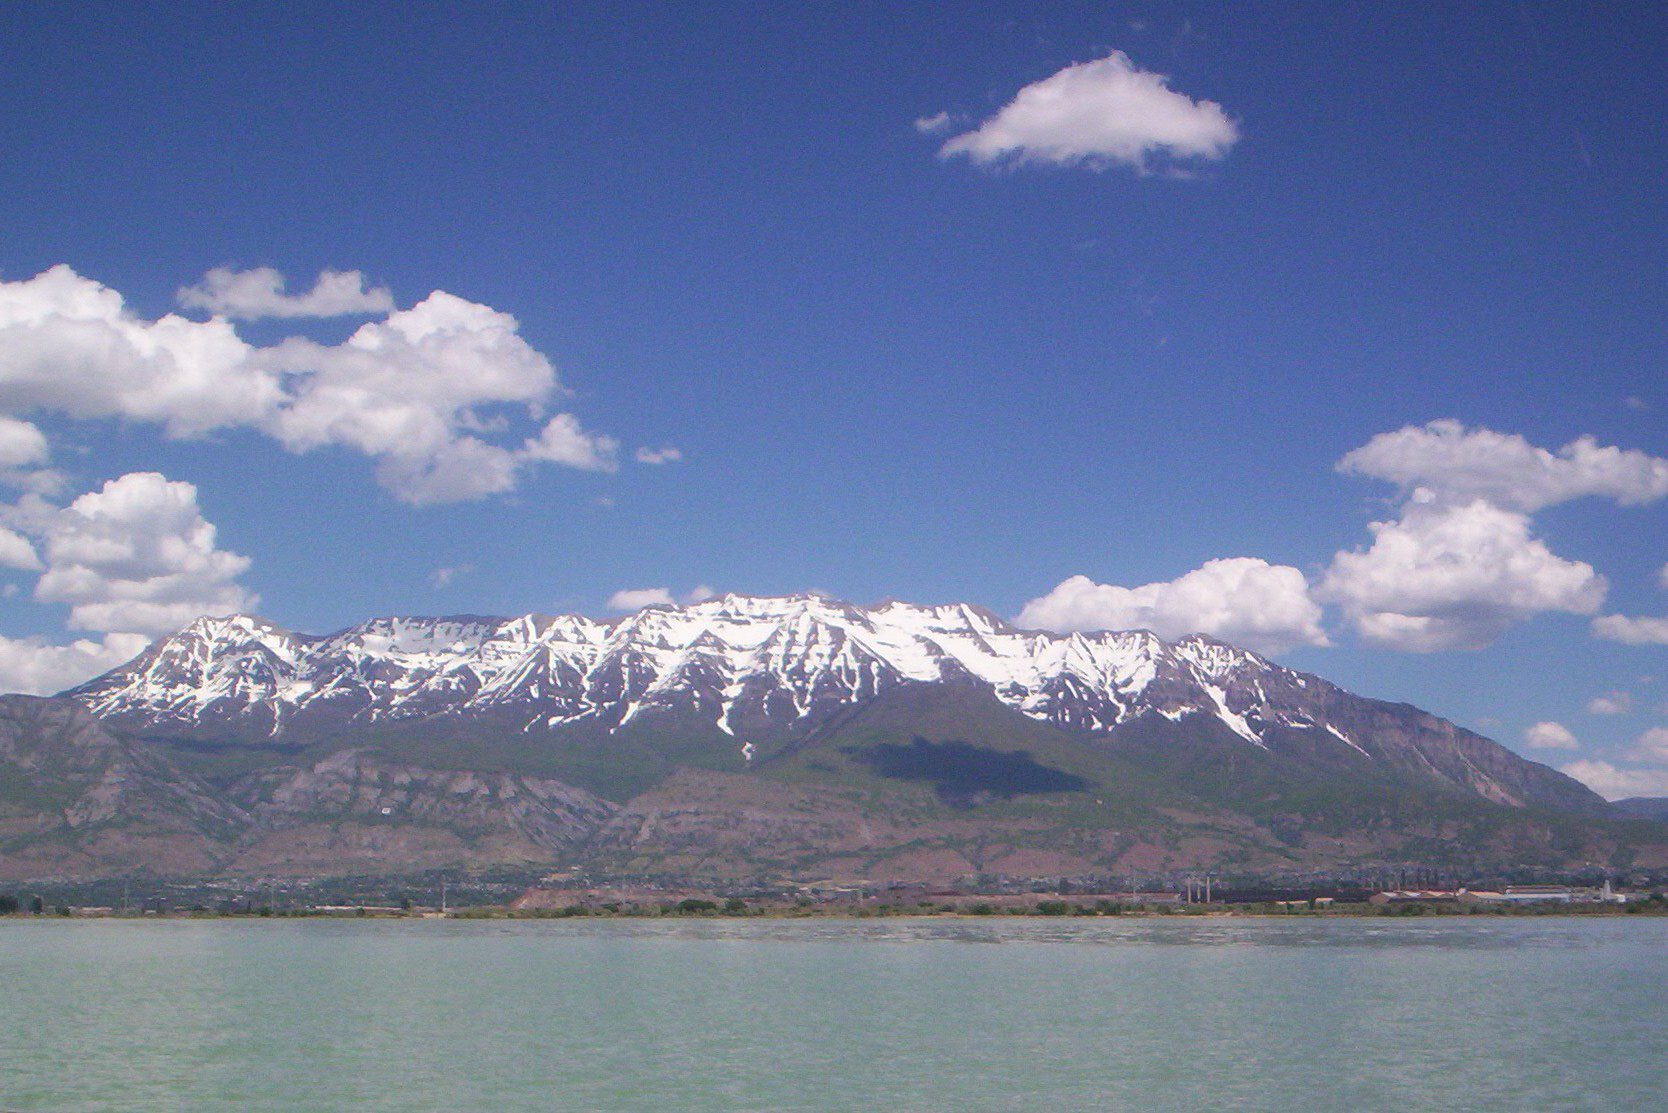 Bill on Utah Lake study to aid Great Salt Lake raises concerns